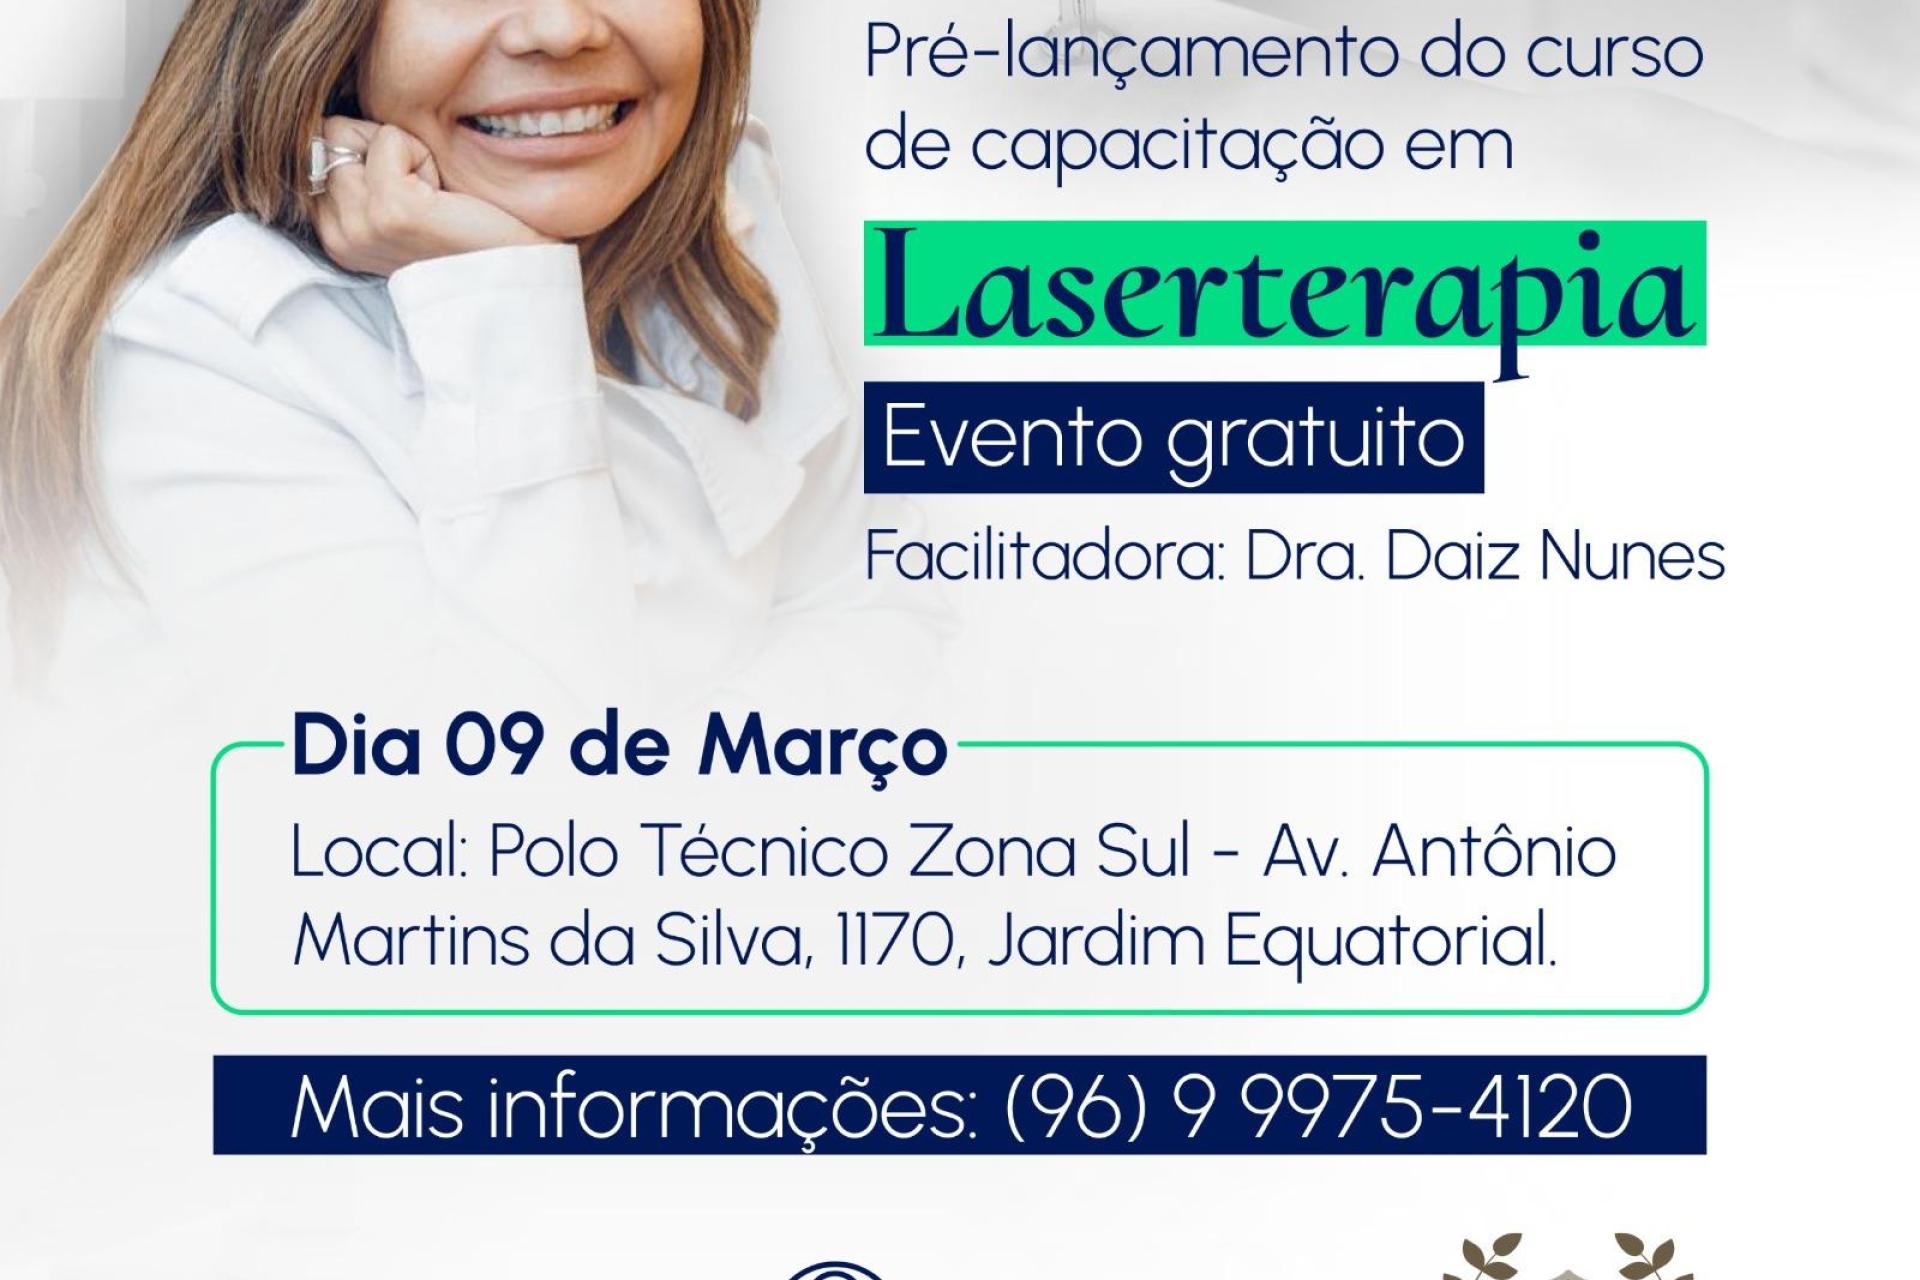 Explorando os Benefícios da Laserterapia: Oportunidade Única no Amapá!